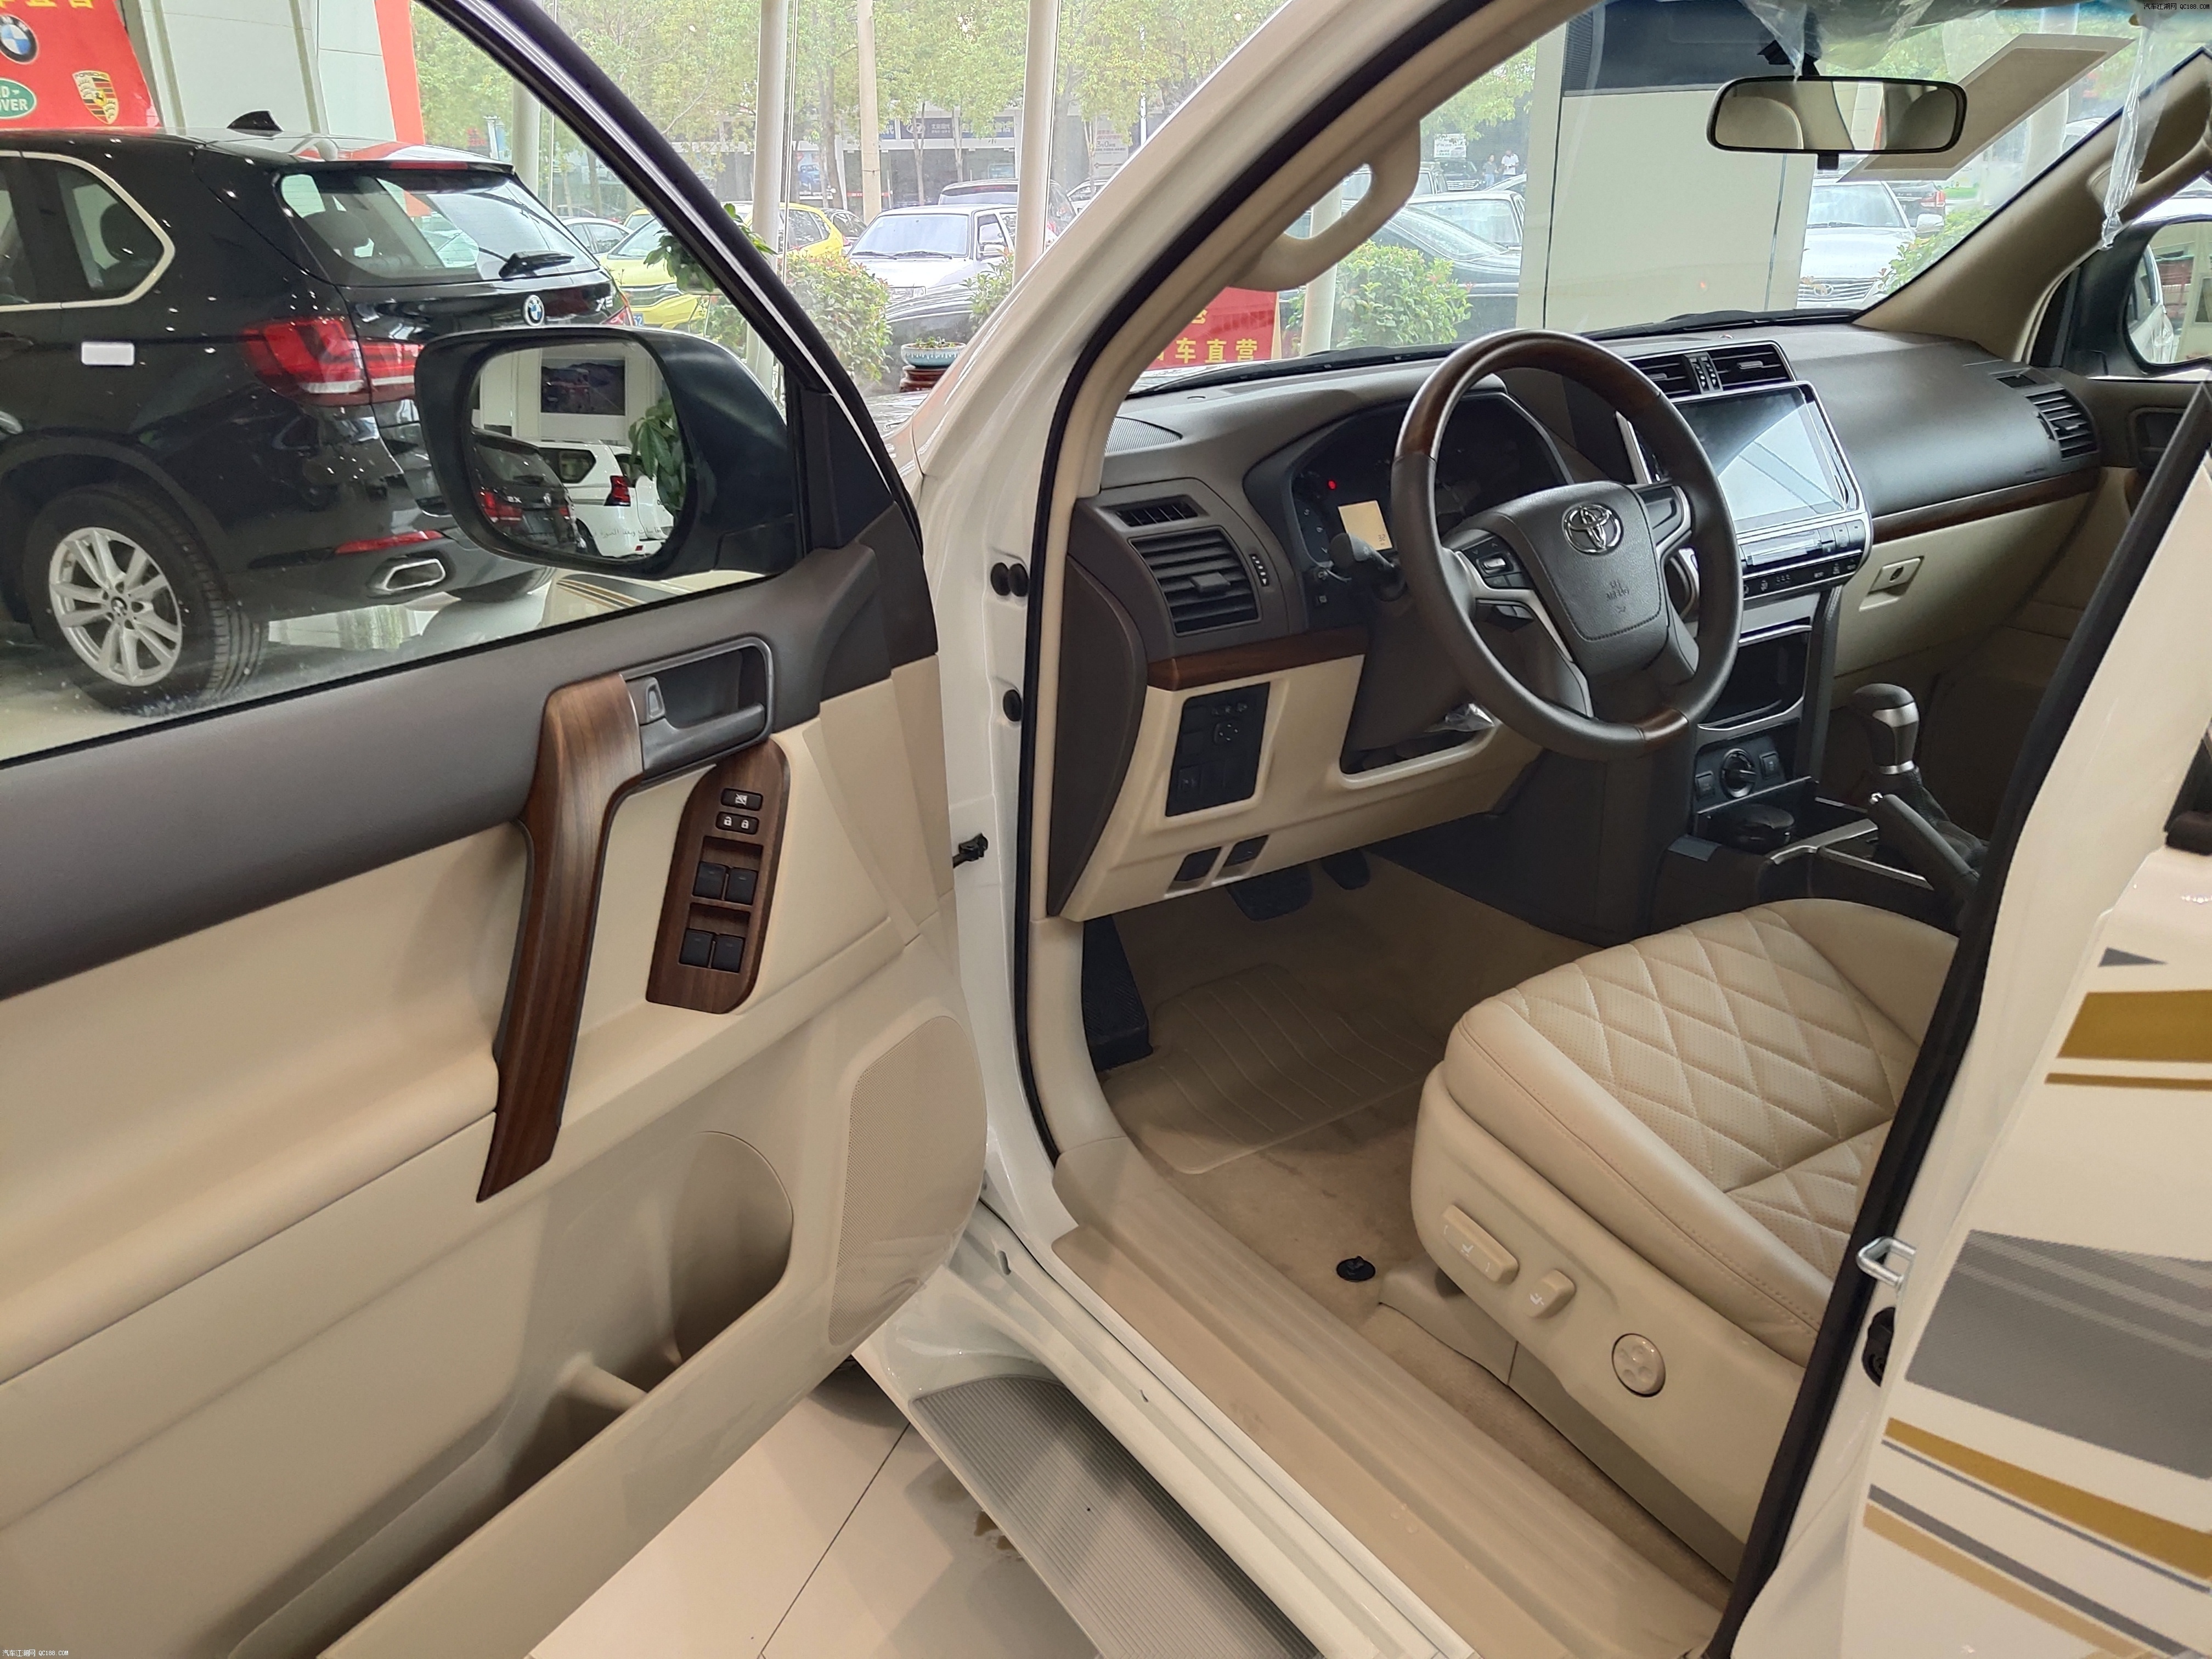 丰田霸道2700超保值SUV云南特惠价丽江在售可按揭分期